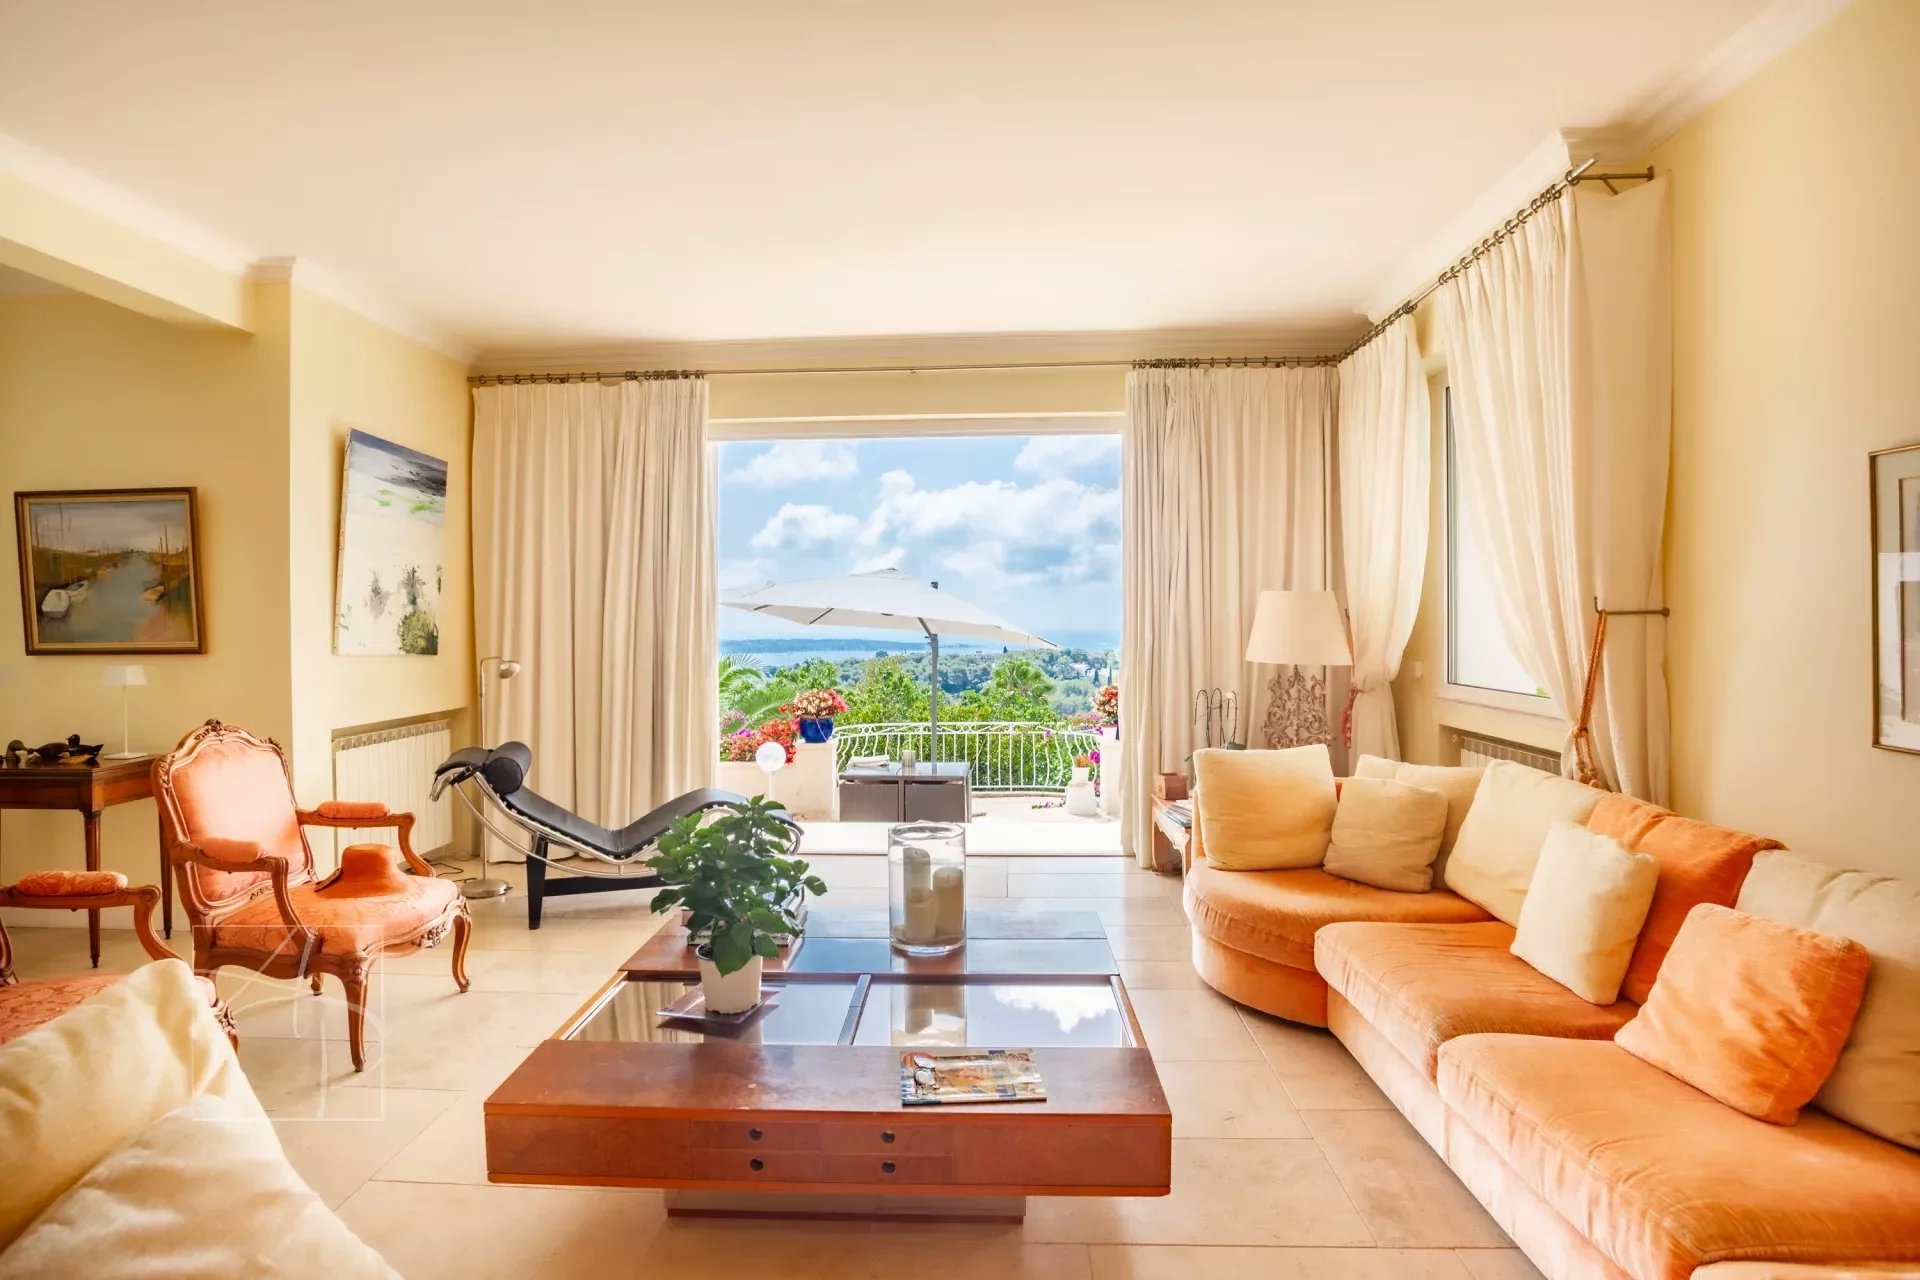 Vue mer panoramique pour cette belle villa située proche des commodités